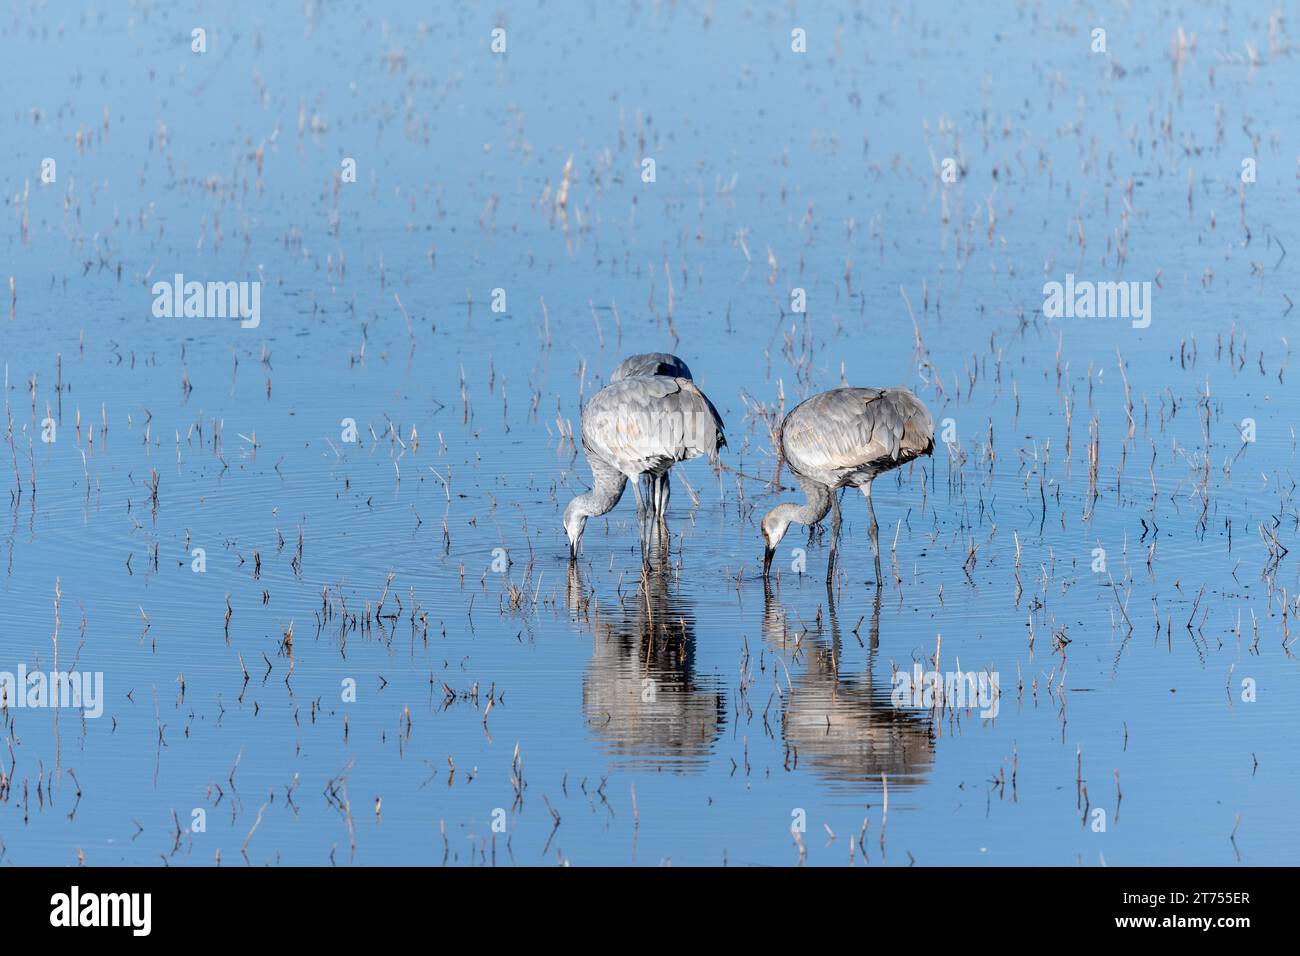 Deux grues Sandhill paissent dans un étang peu profond. Les oiseaux se reflètent pleinement à la surface de l'eau bleue calme. Banque D'Images